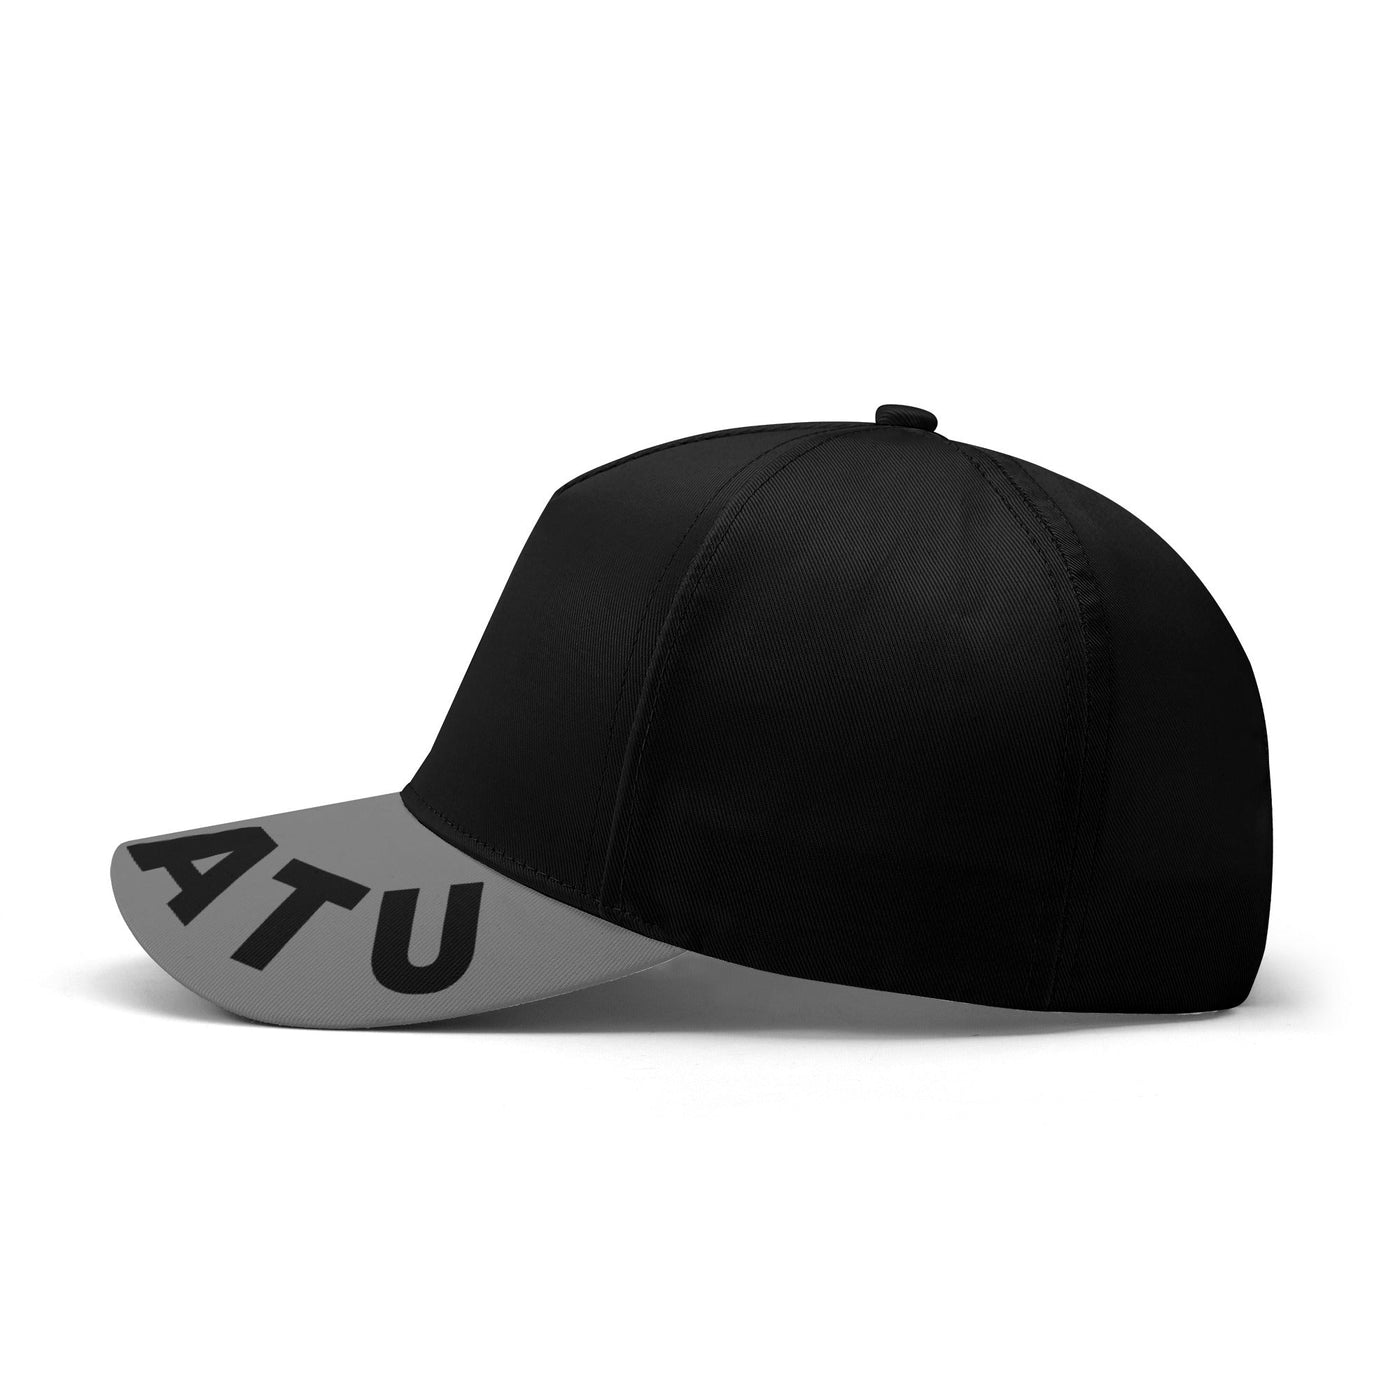 Mugatu "Zoolander" Fashion Freak Hat